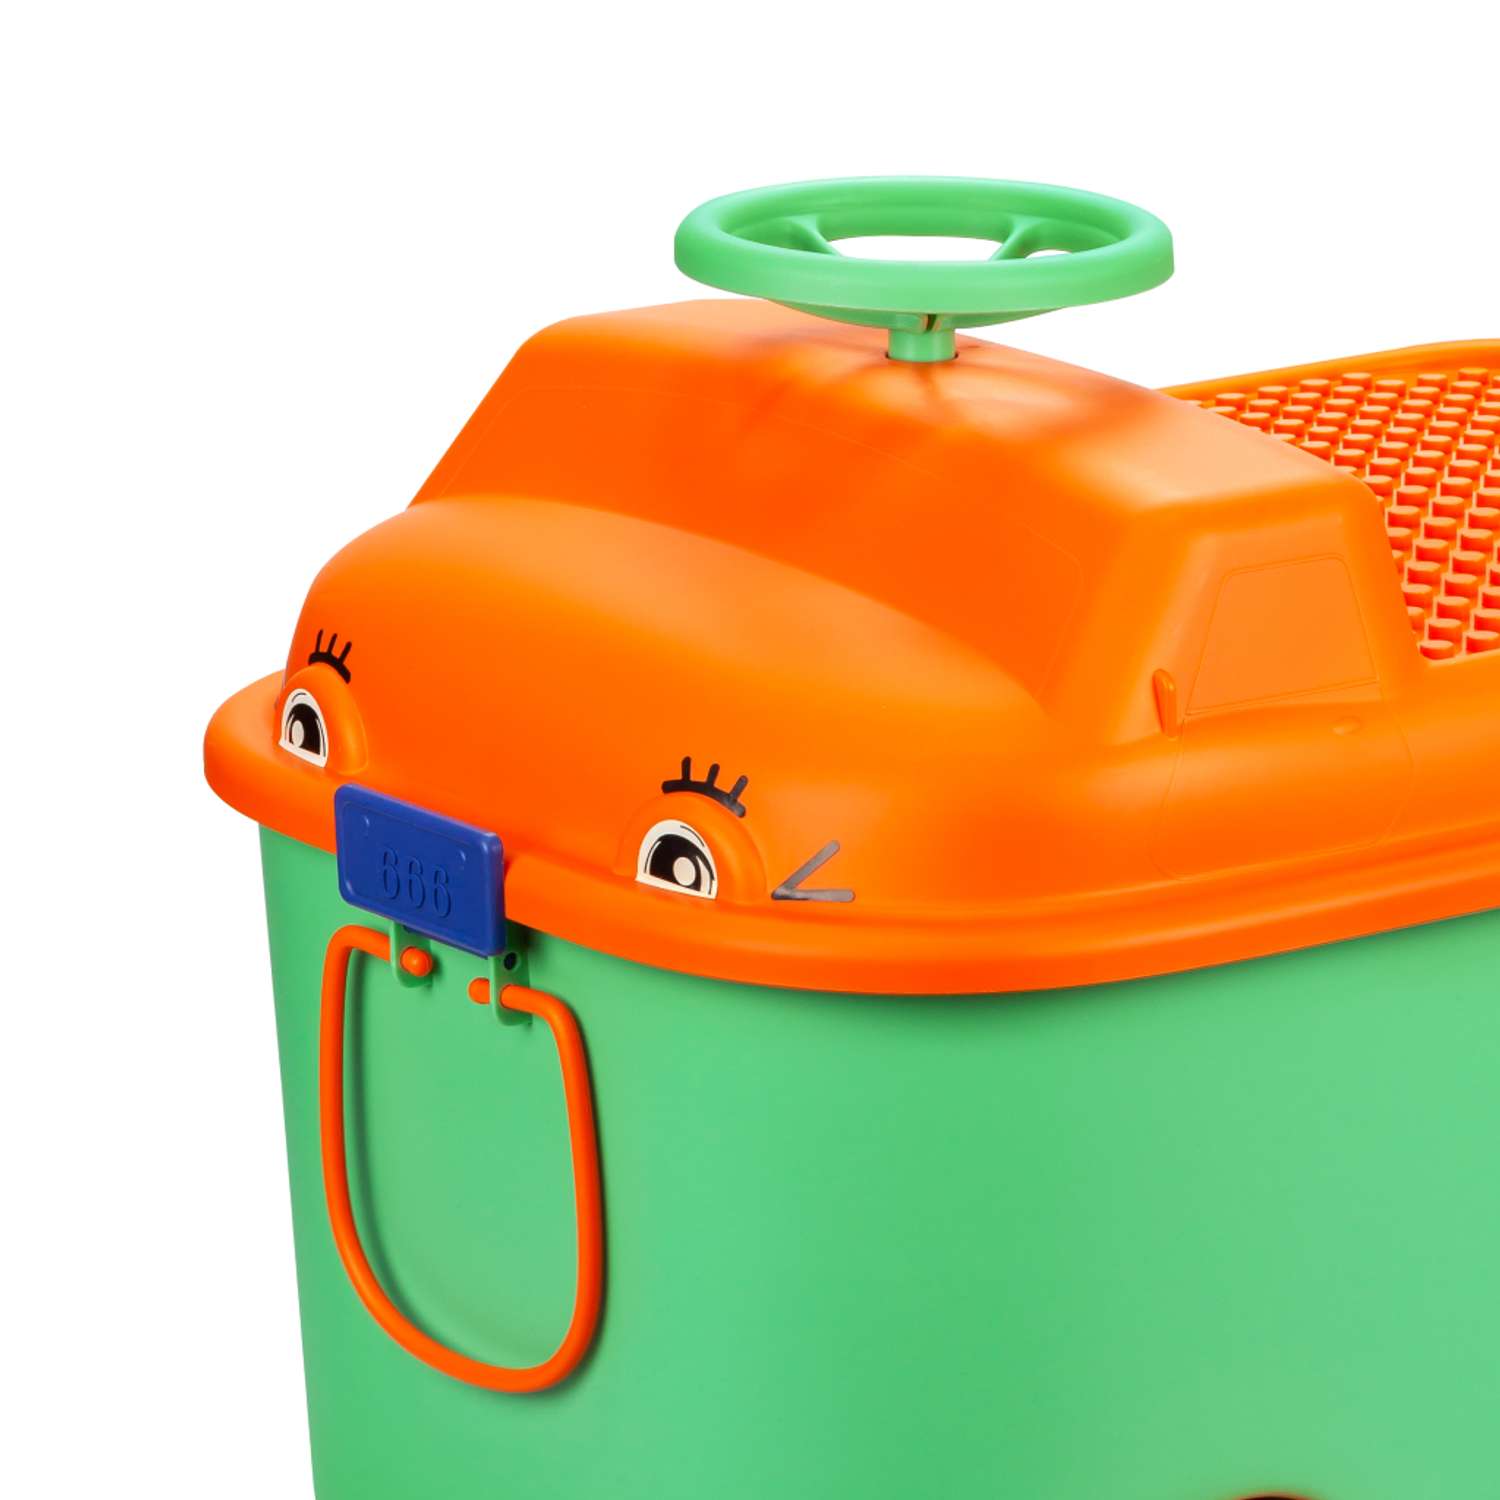 Ящик для хранения игрушек Solmax контейнер на колесиках 54х41.5х38 см зеленый - фото 9